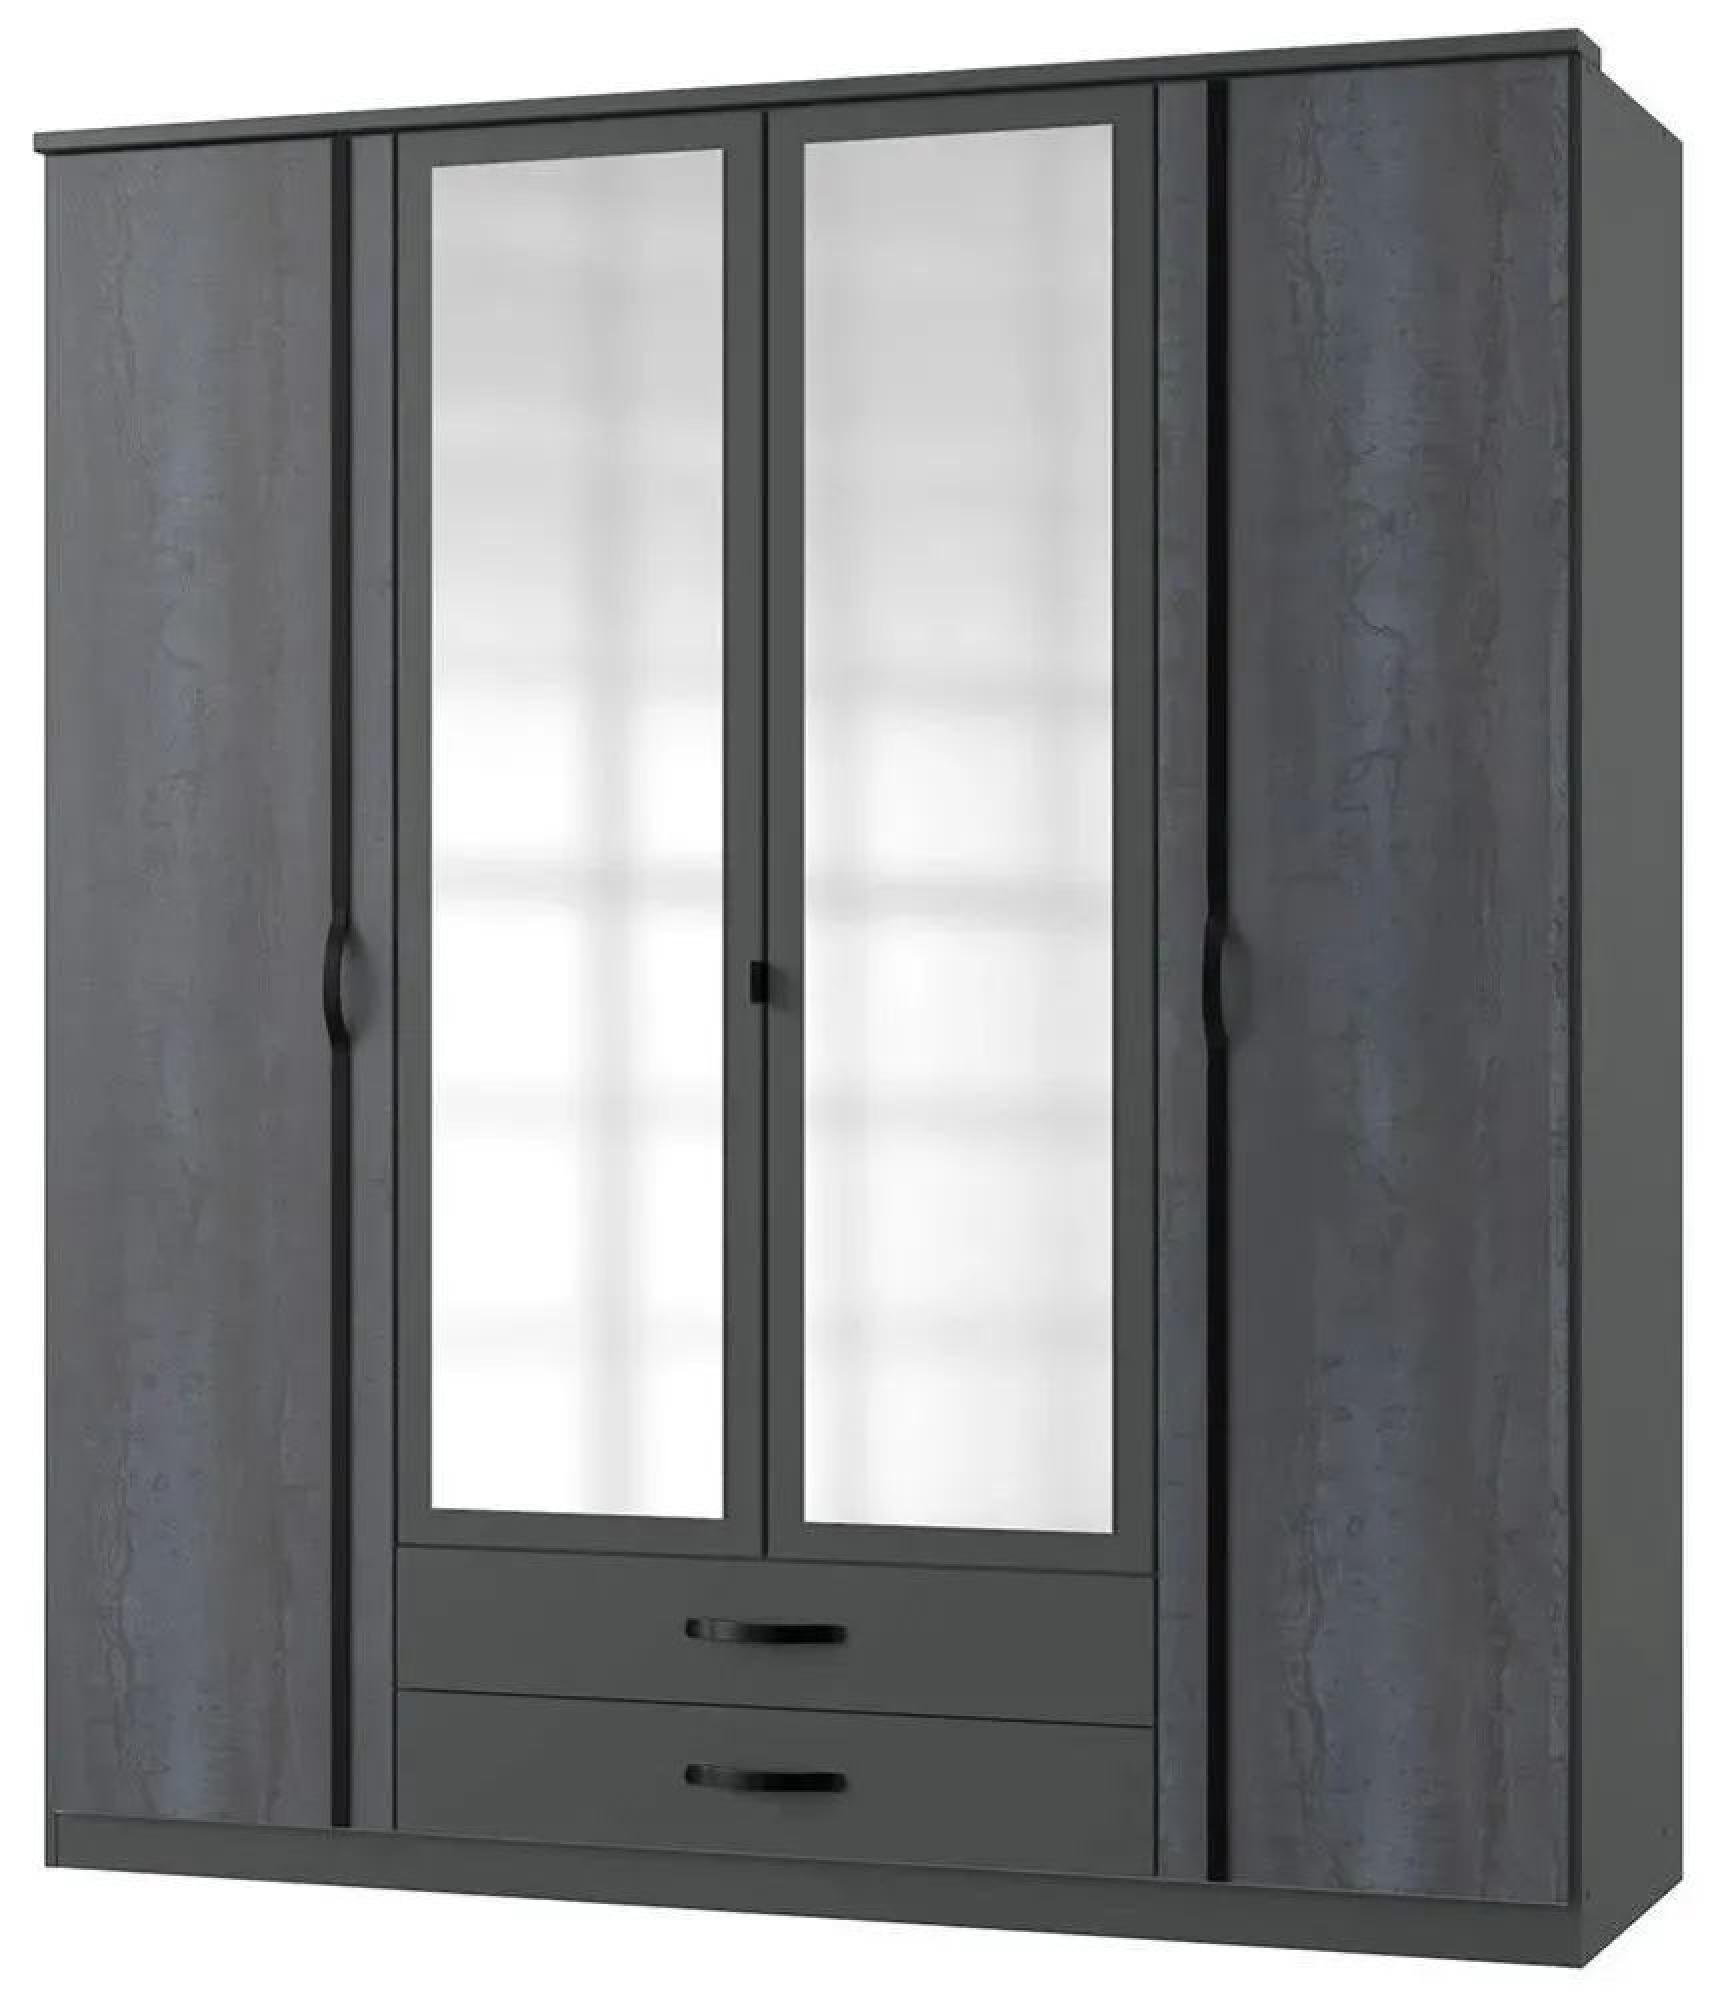 IN STOCK Duo2 4 Door Combi Wardrobe, German Made Graphite Mirrored Front Four Door Wardrobe